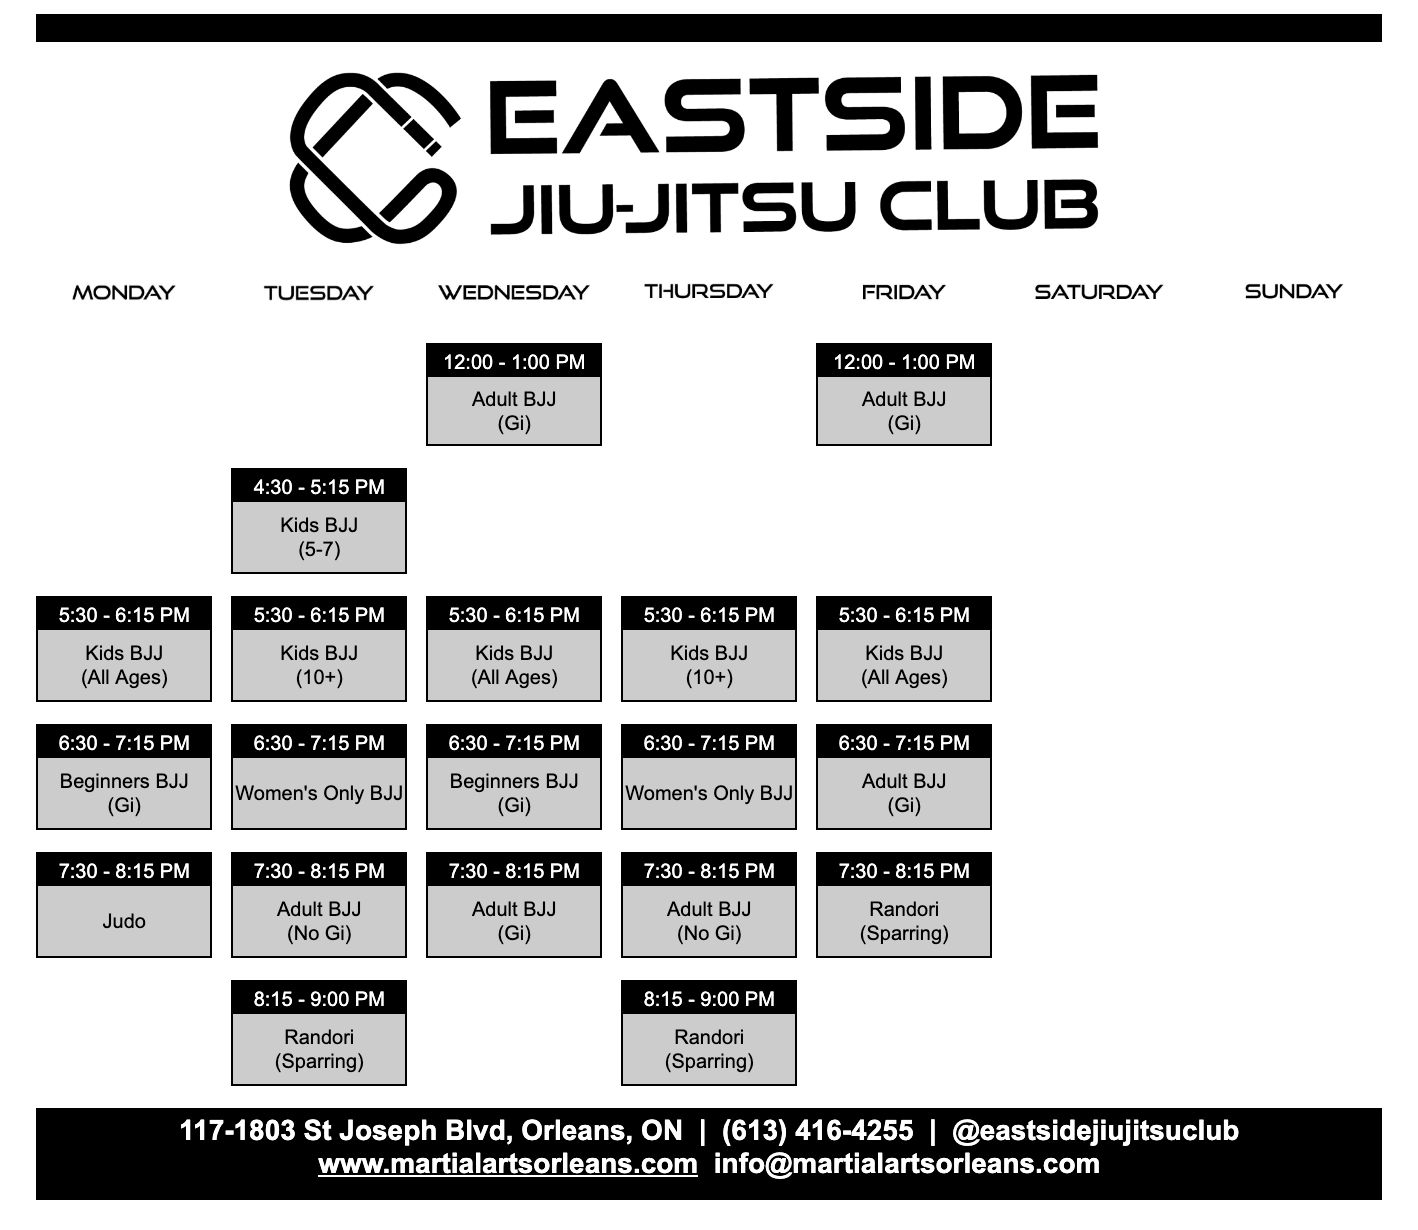 Eastside Jiu-Jitsu Club schedule